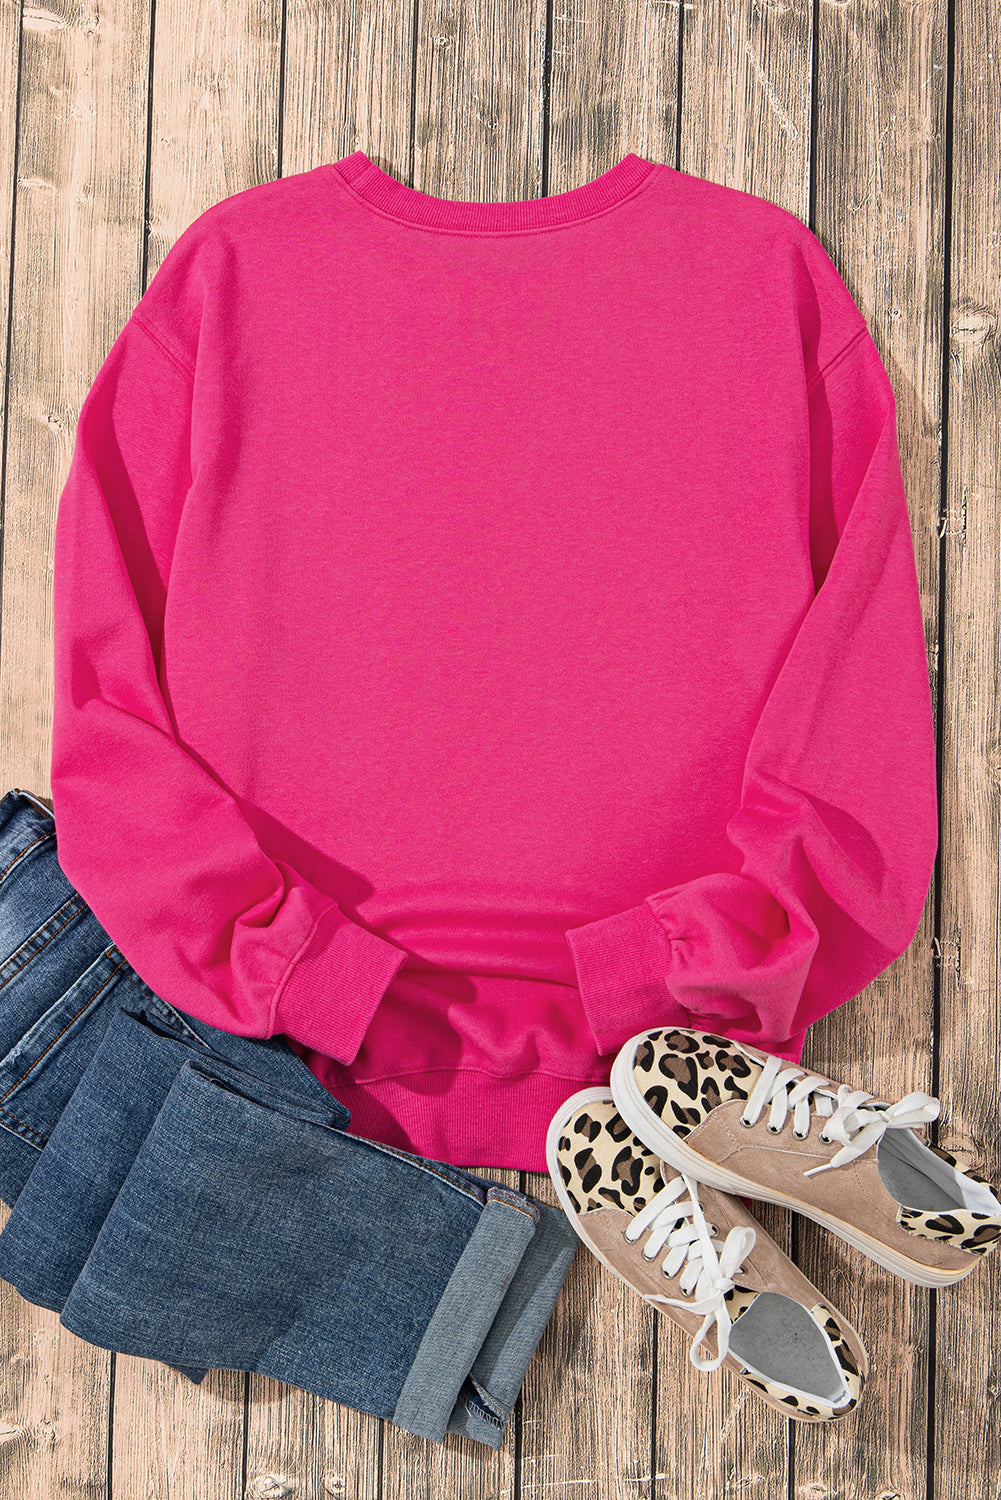 Erdbeerrosafarbenes Sweatshirt mit Kuhmotiv und Pailletten-Doppelherz-Aufnäher